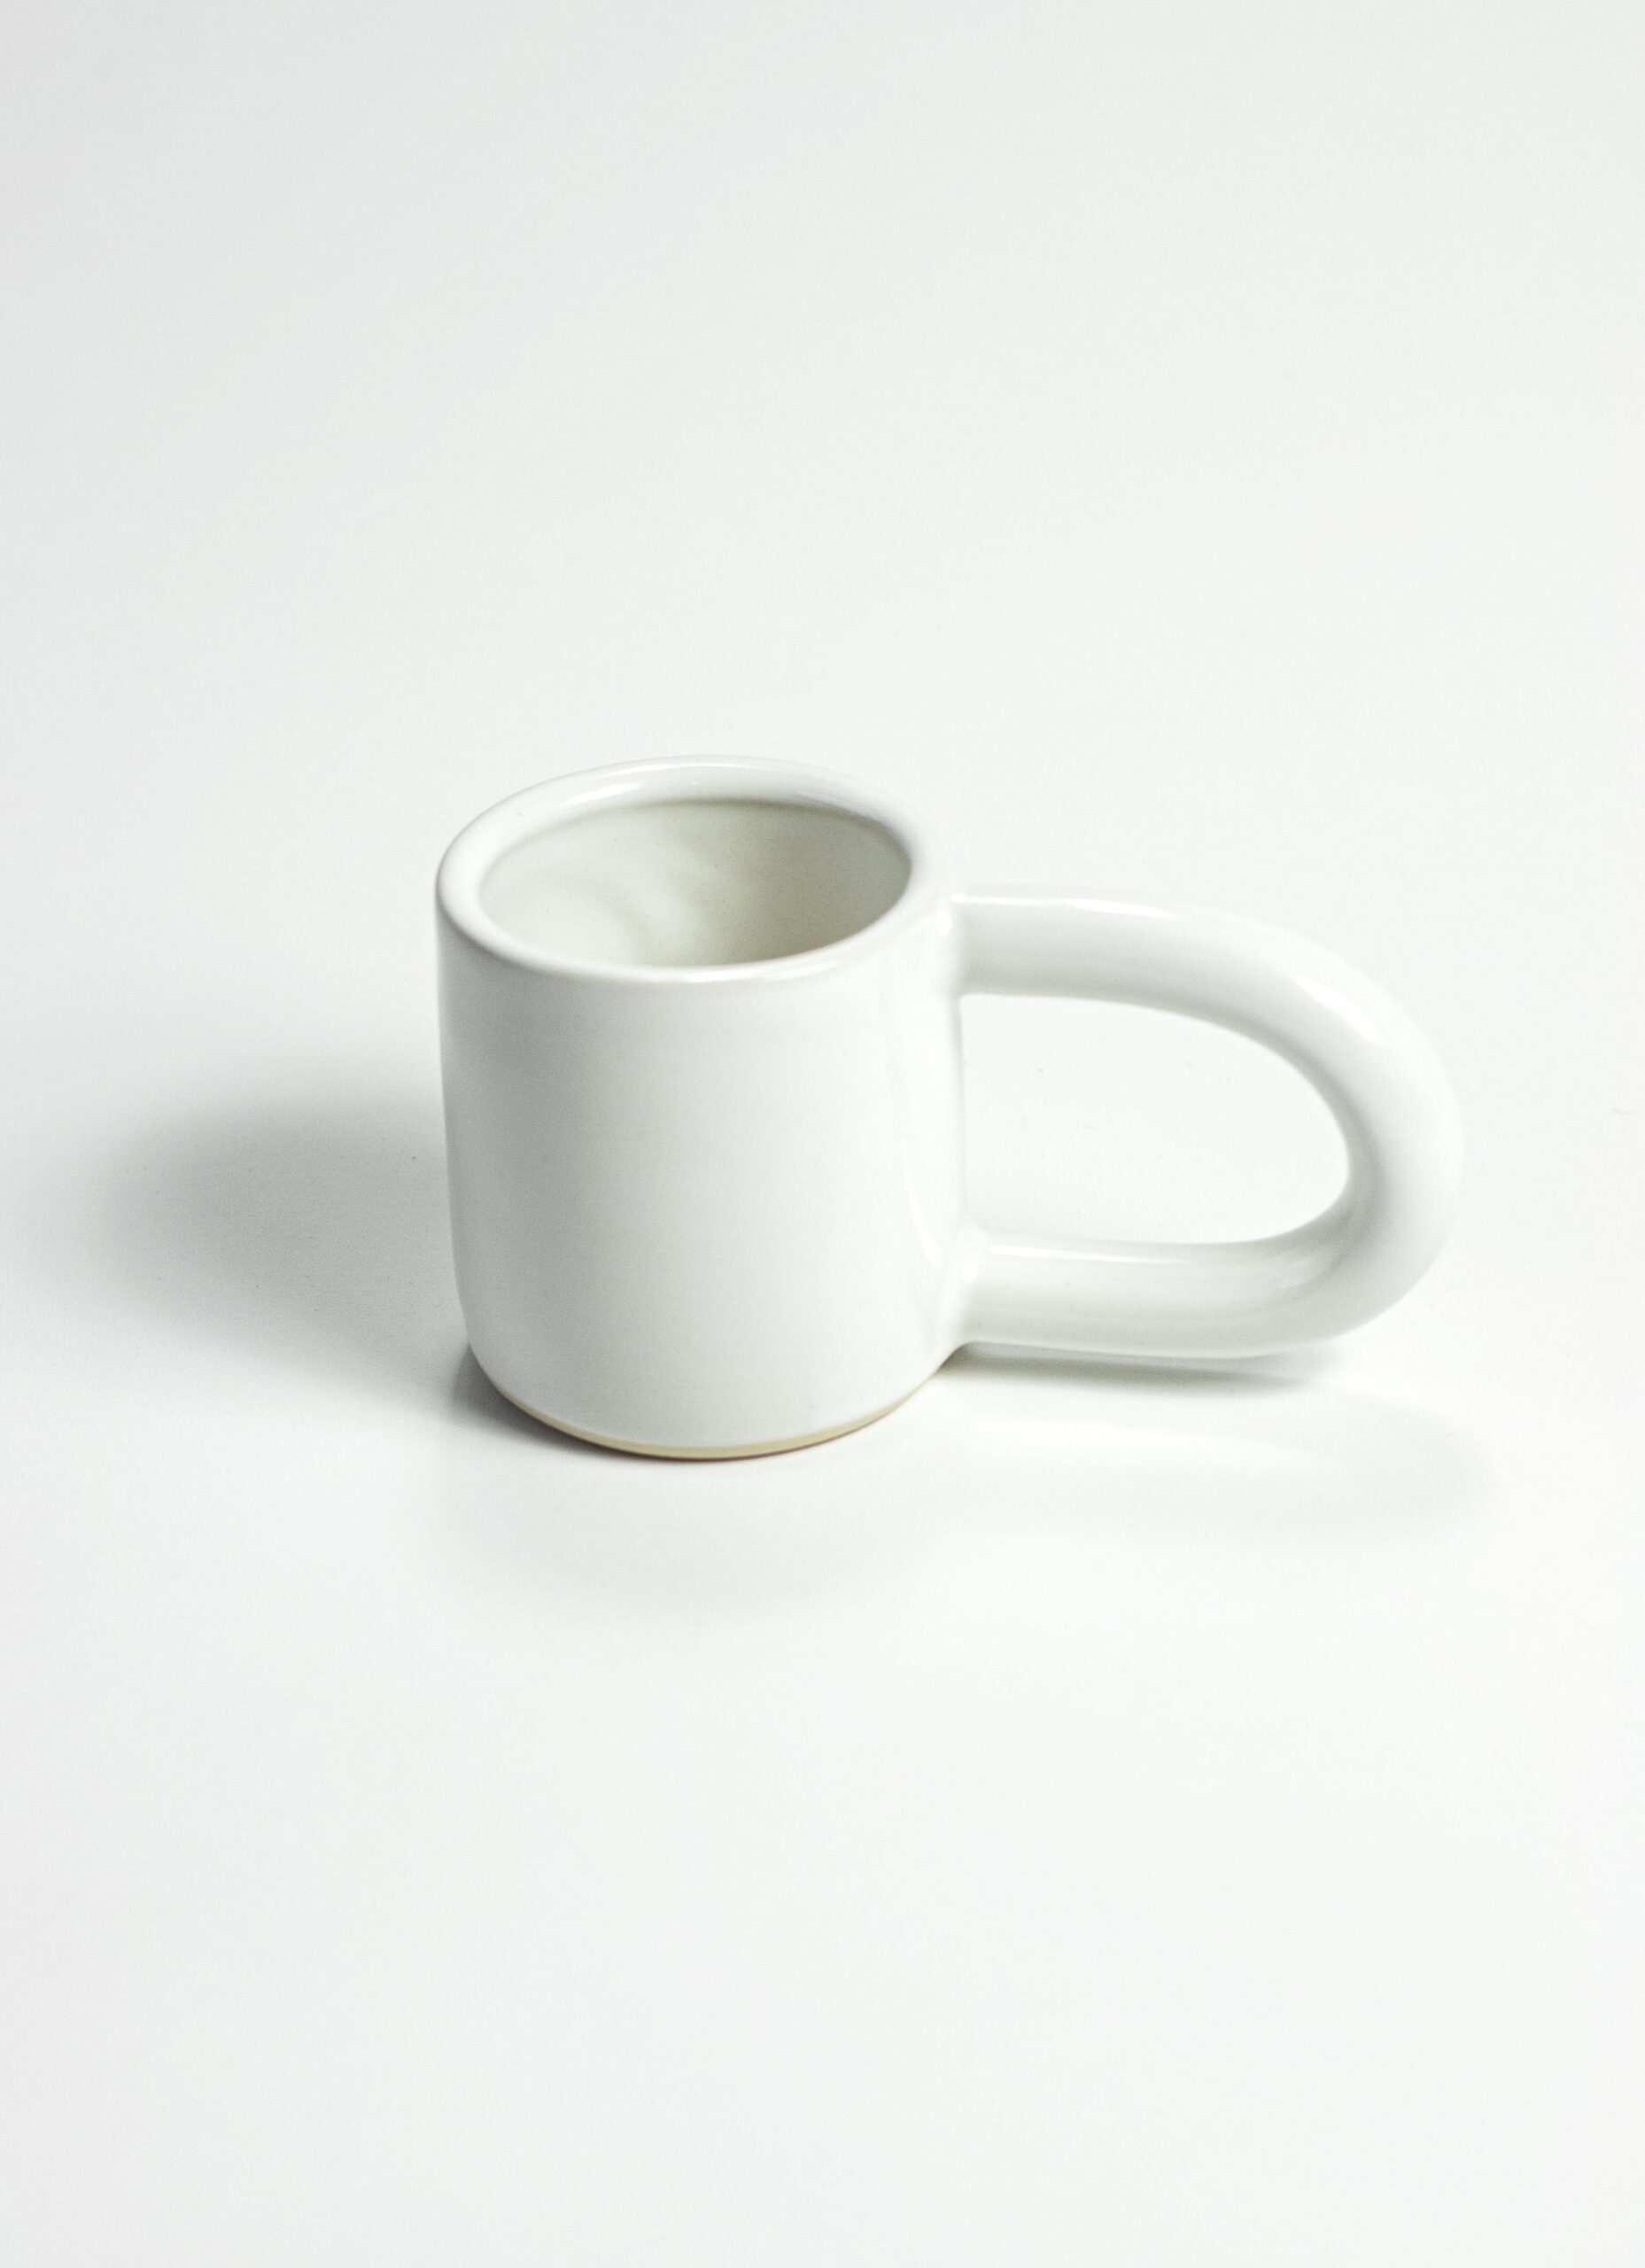 Guten Co - Gloss White Sturdy Mug - Handmade Stoneware